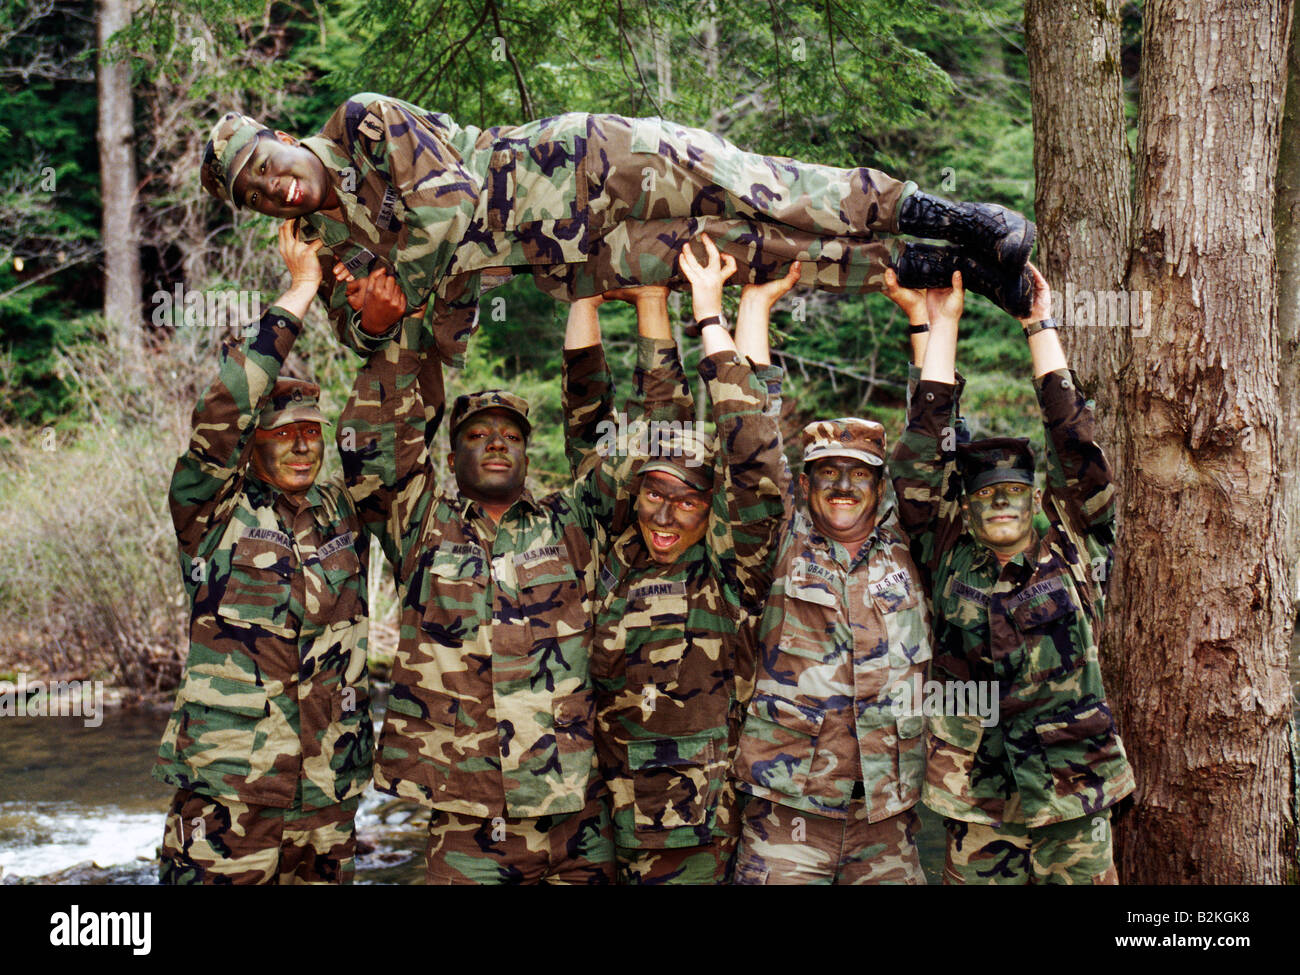 Les soldats de l'Armée US mâle tenir une femme soldat en altitude pour une photographie humoristique Banque D'Images